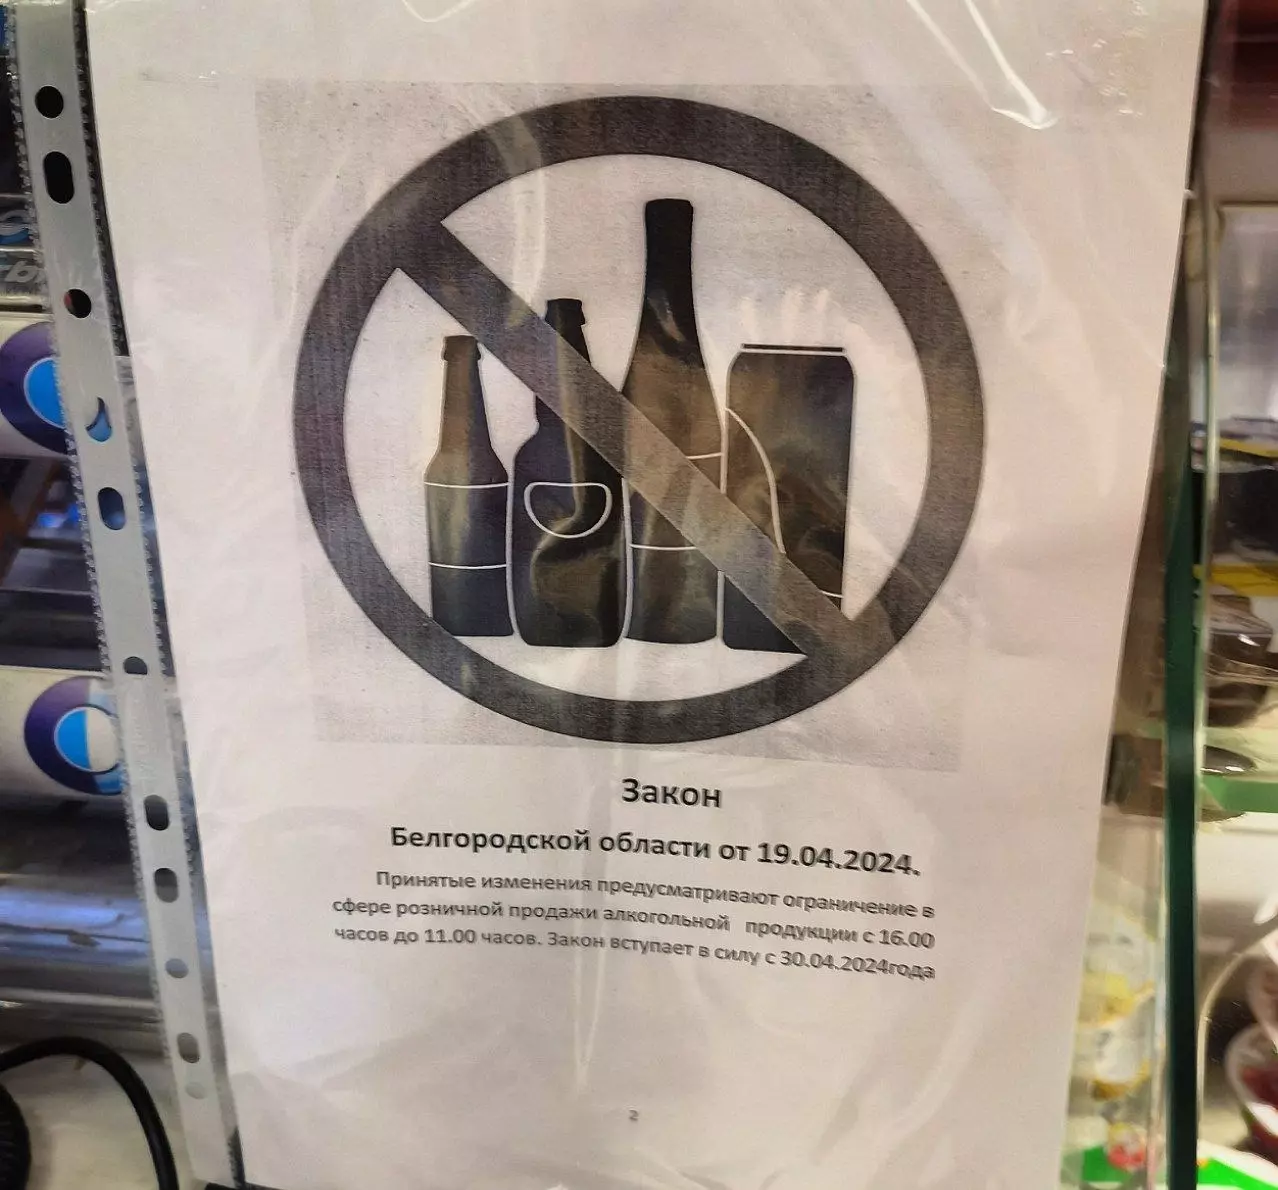 Объявление об ограничении на продажу алкоголя